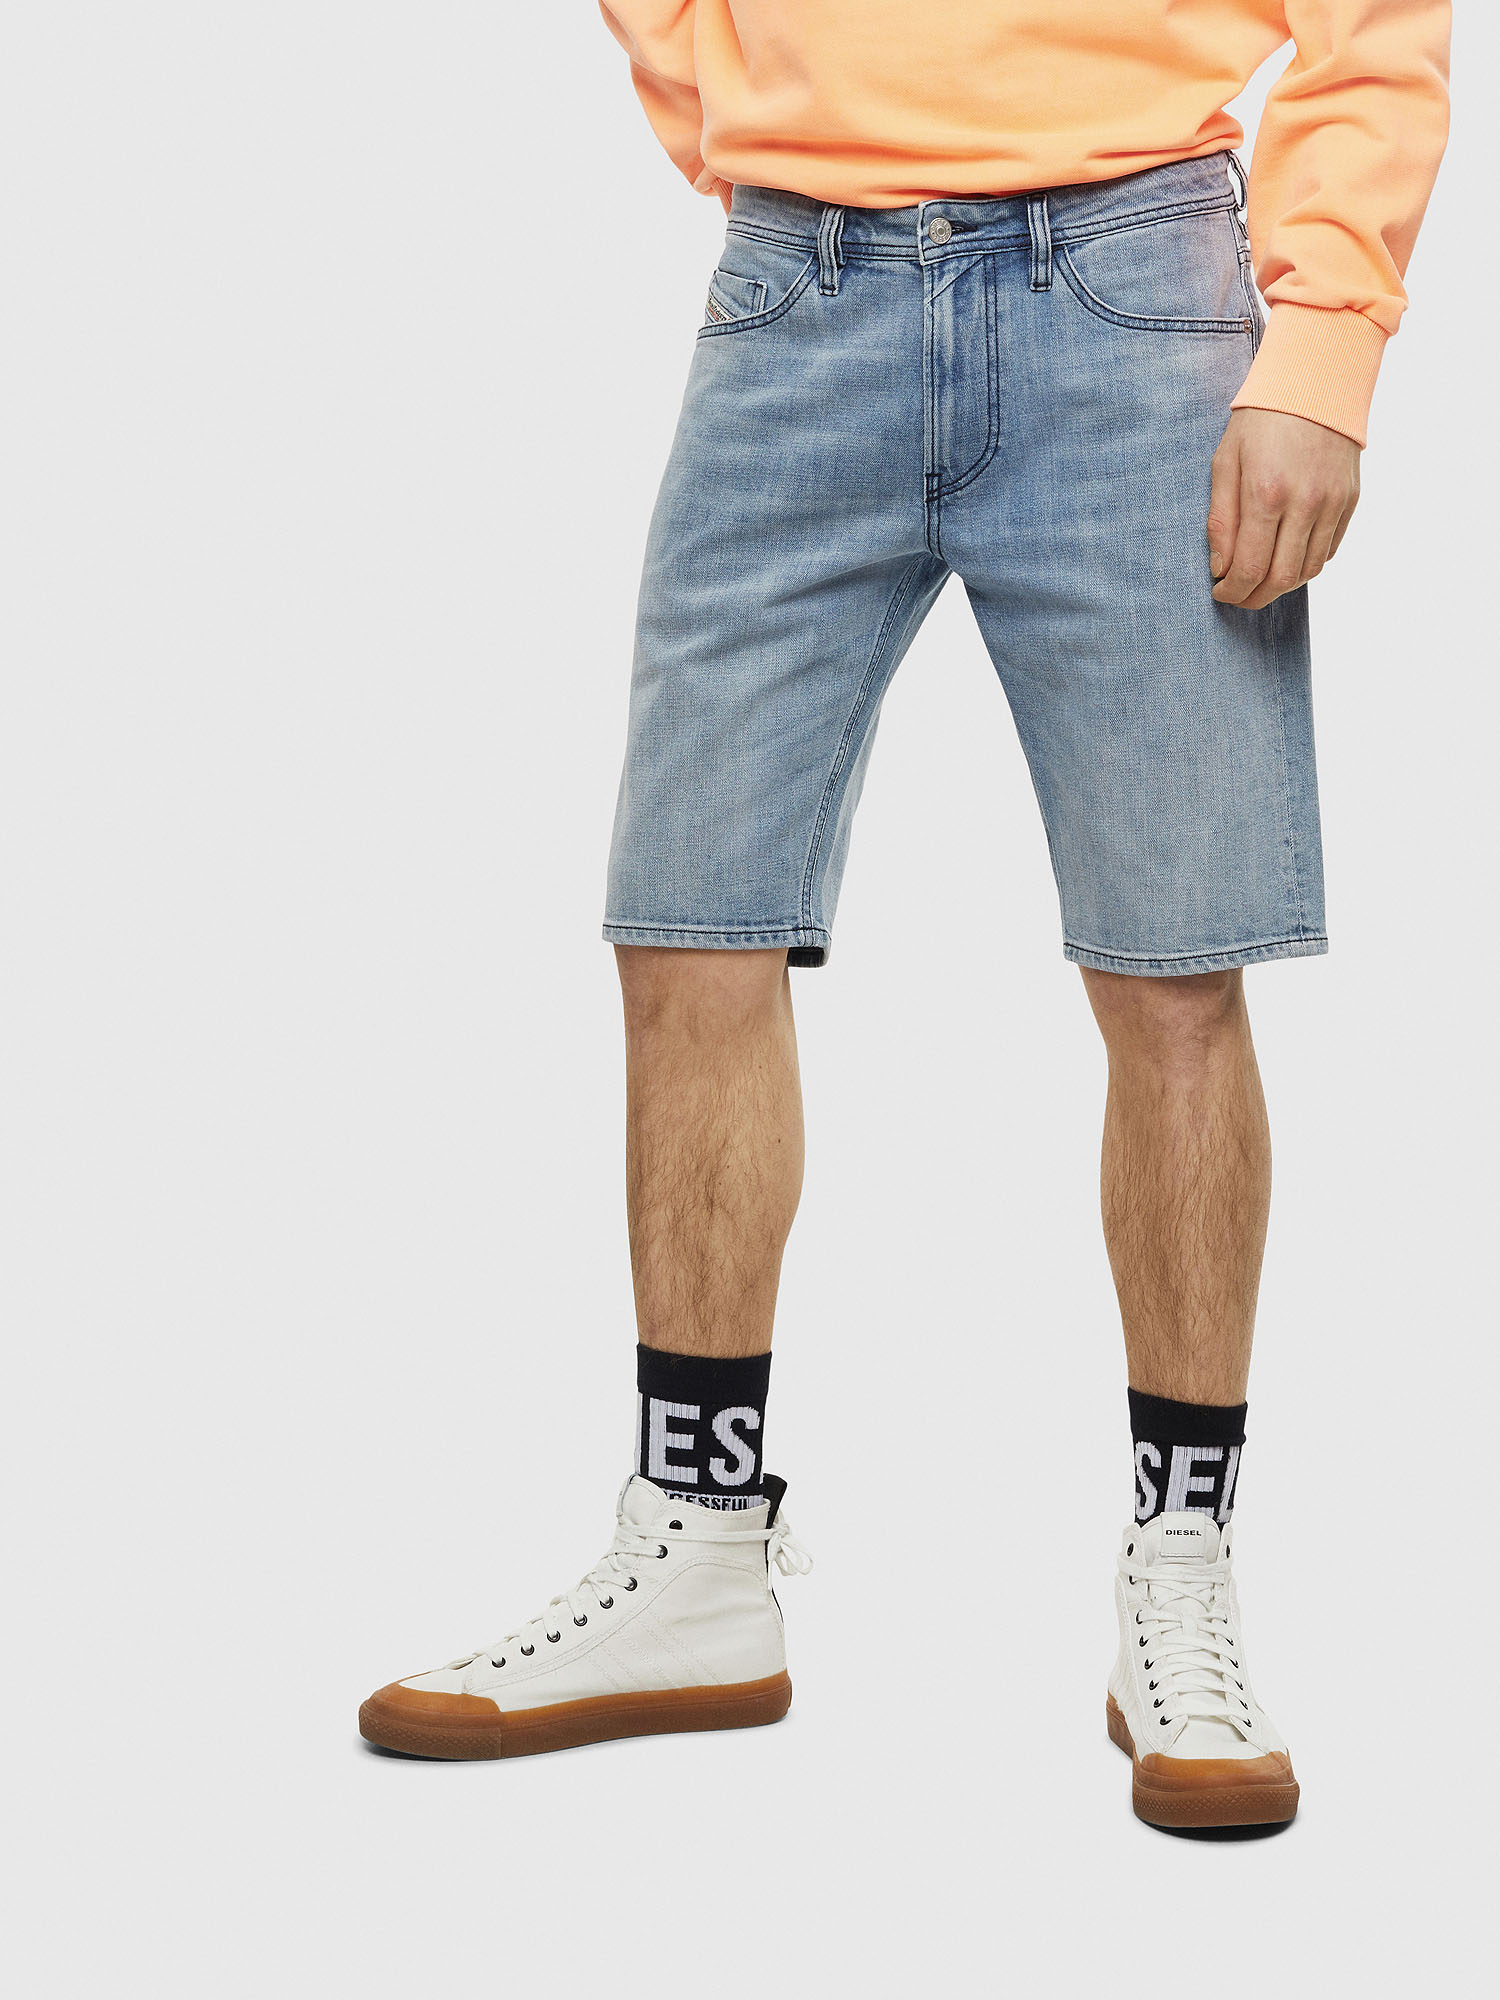 THOSHORT Man: Denim shorts with dark stitching | Diesel